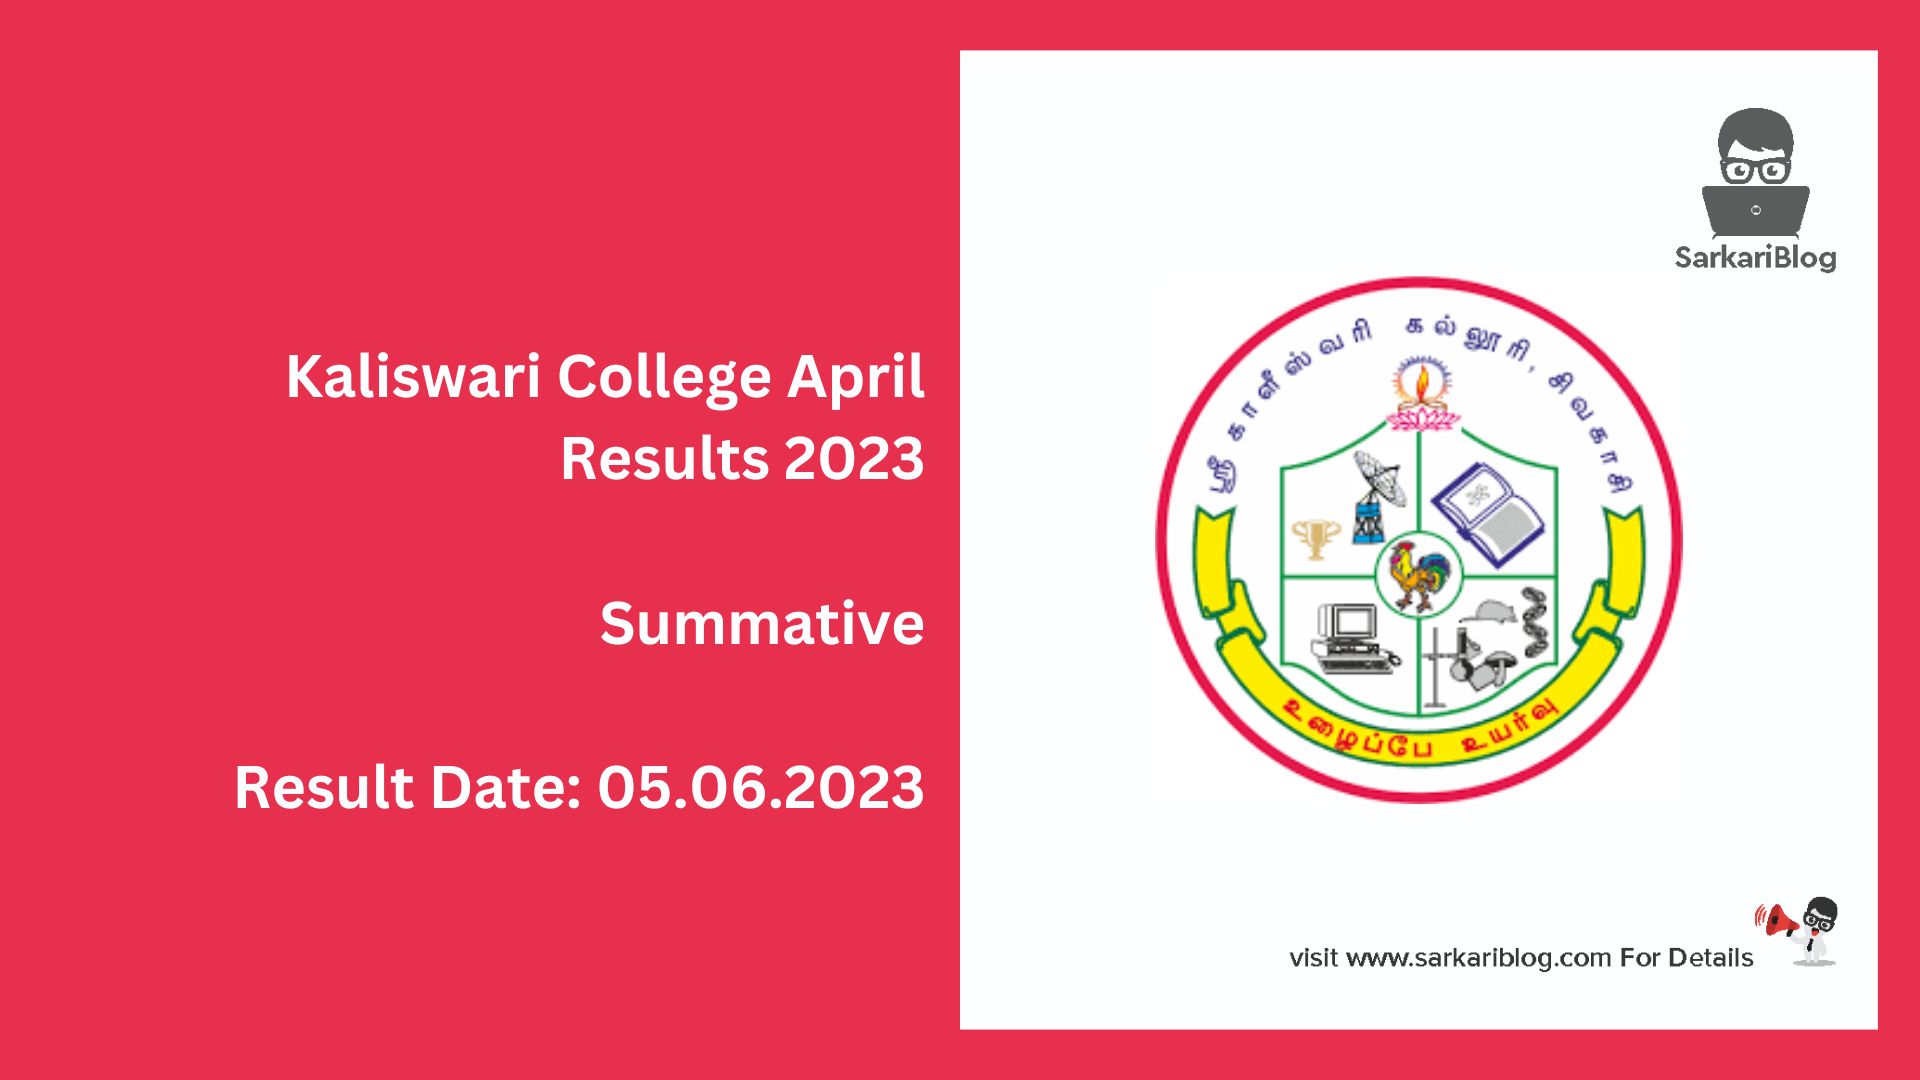 Kaliswari College April Results 2023